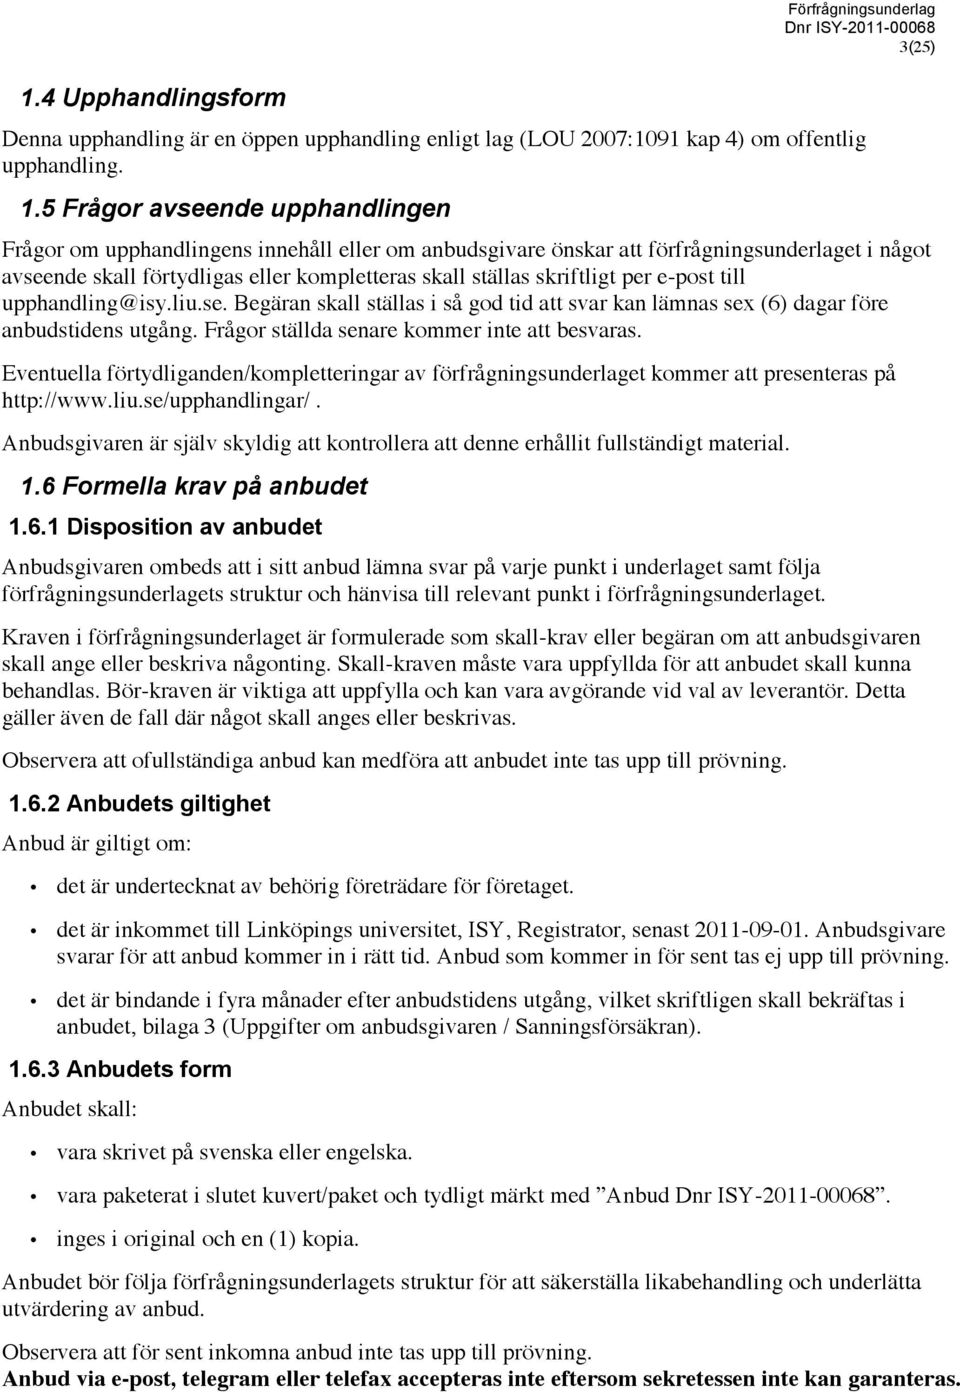 skriftligt per e-post till upphandling@isy.liu.se. Begäran skall ställas i så god tid att svar kan lämnas sex (6) dagar före anbudstidens utgång. Frågor ställda senare kommer inte att besvaras.